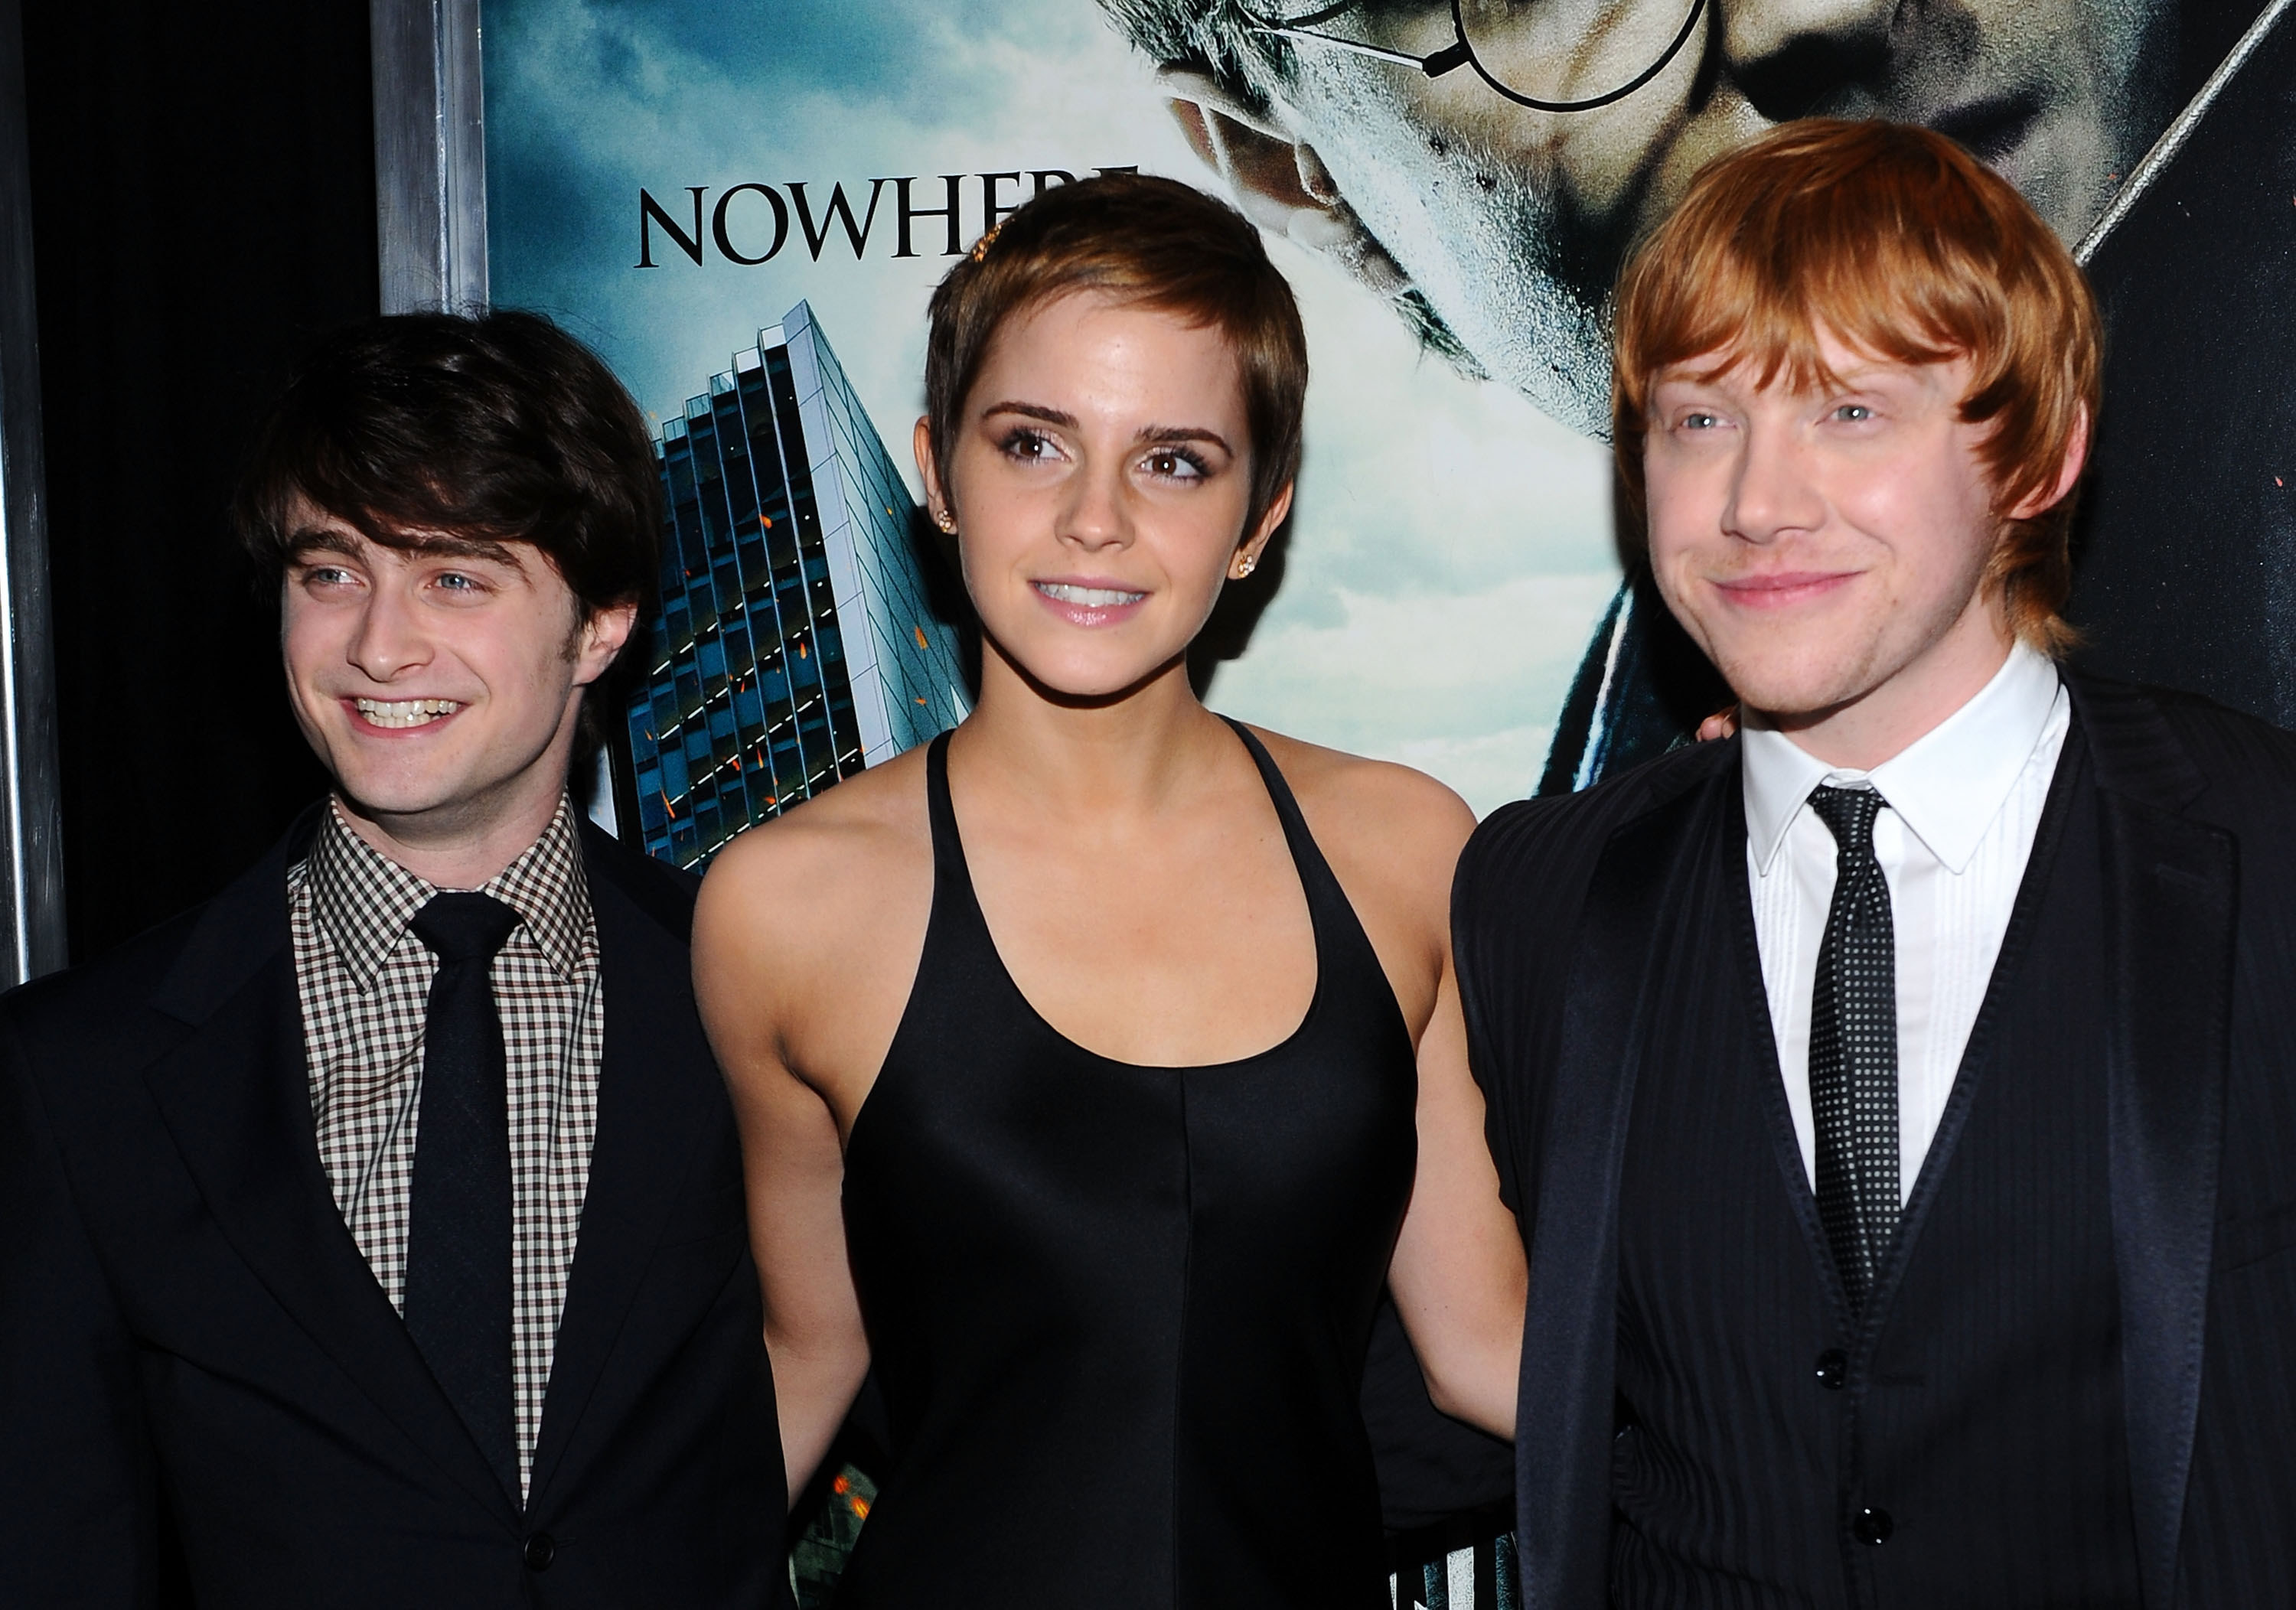 Closeup of Daniel Radcliffe, Emma Watson, and Rupert Grint